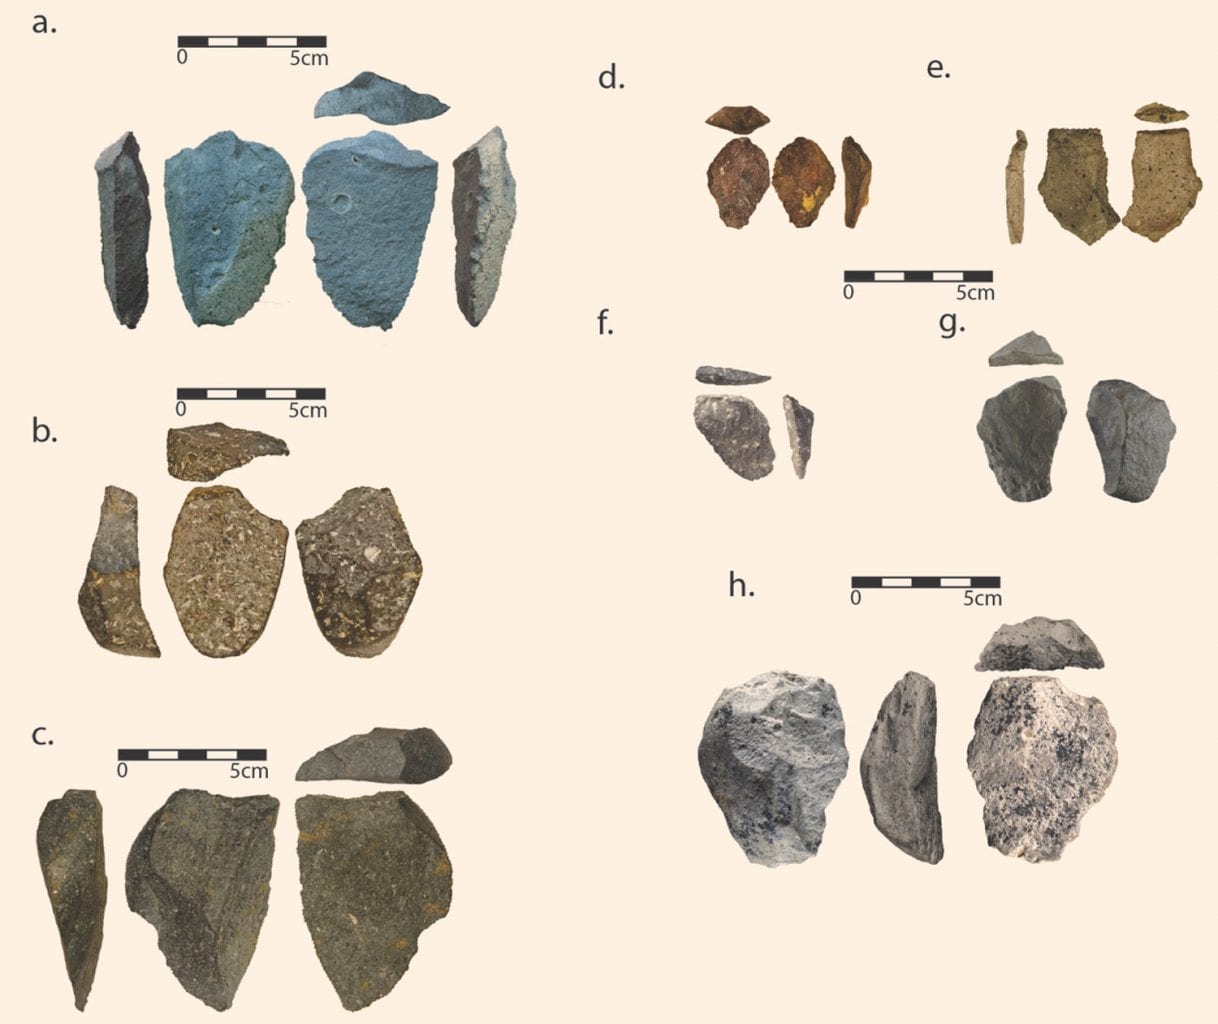 Каменные орудия труда, которые вы видите на этом изображении, были изготовлены олдувайской культурой более 2,5 миллионов лет назад, что делает их одними из старейших обнаруженных. Они были обнаружены два года назад на месте Бокол Дора 1 в Эфиопии. Предоставлено: Дэвид Р. Браун.